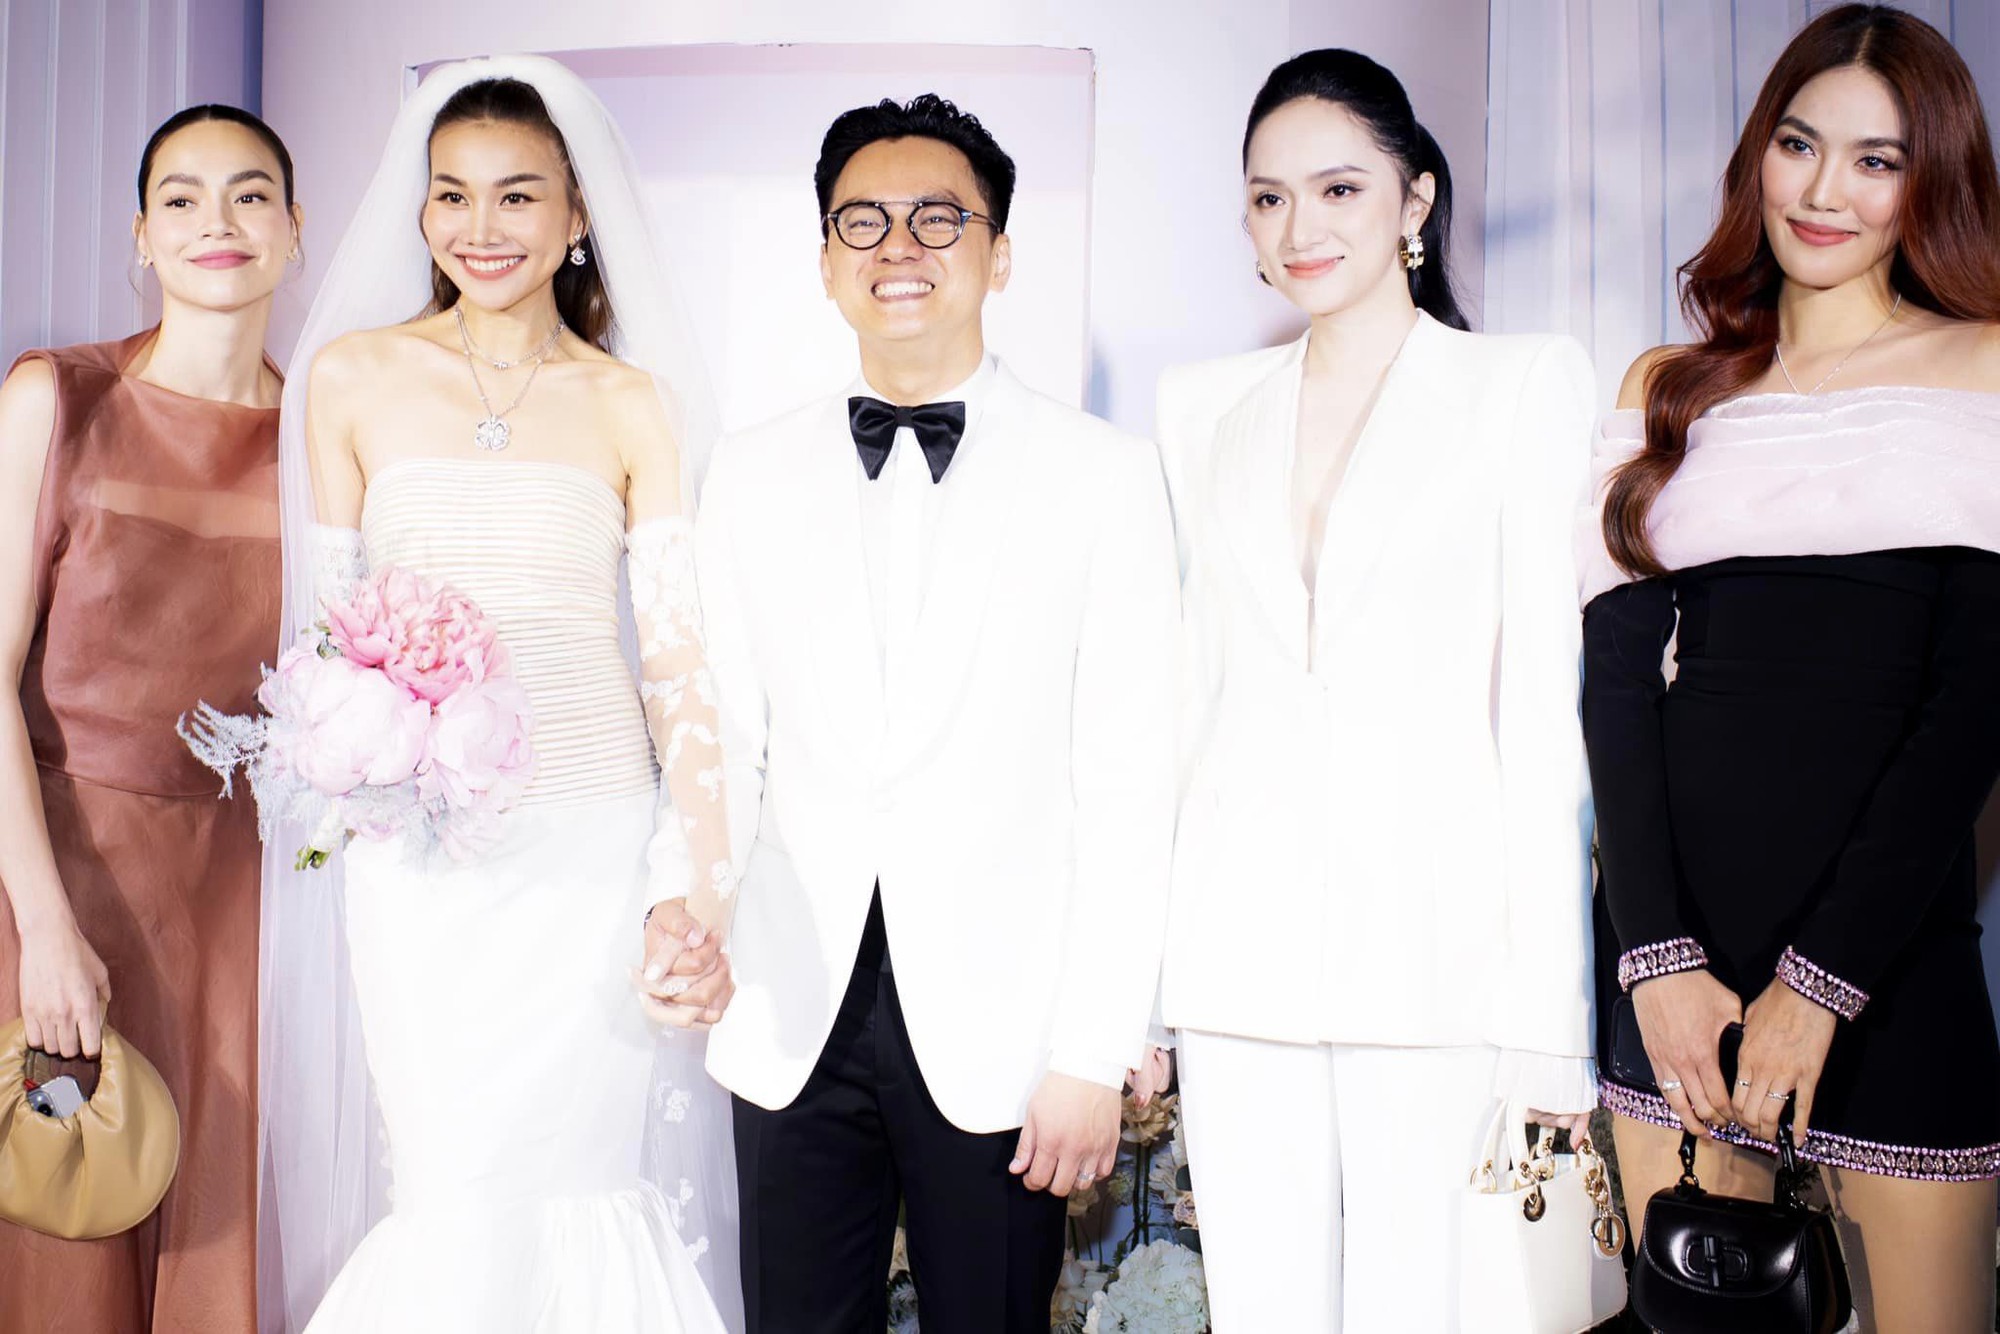 Hồ Ngọc Hà 'xả kho ảnh' cùng vợ chồng Thanh Hằng, hé lộ điều đặc biệt trong đám cưới sắp tới với Kim Lý - Ảnh 6.